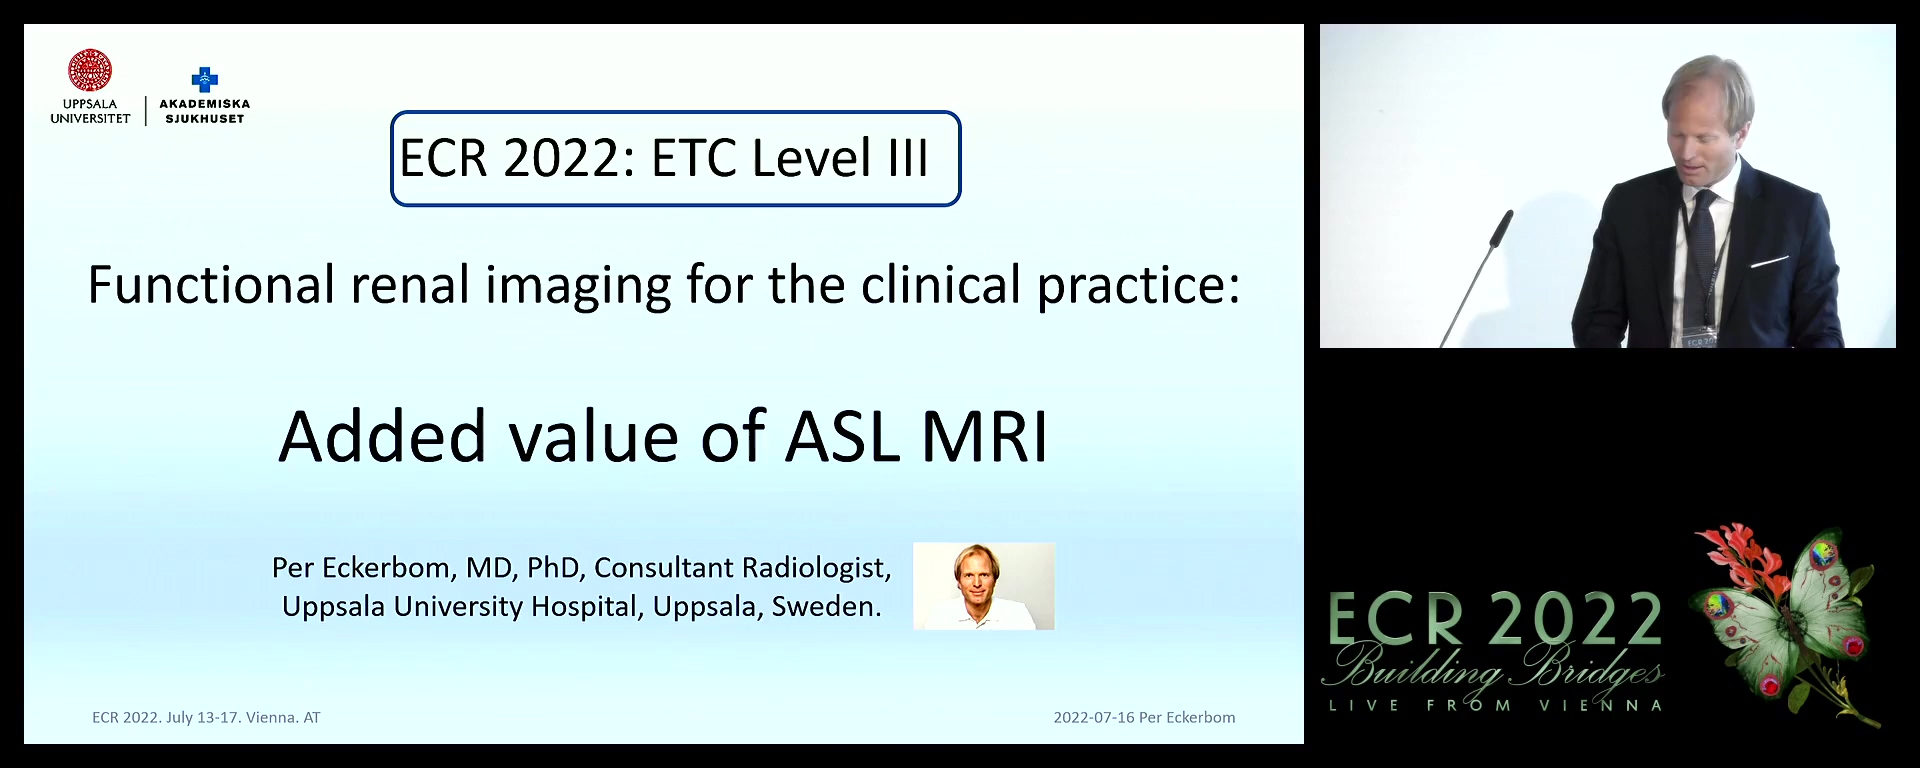 Added value of ASL MRI